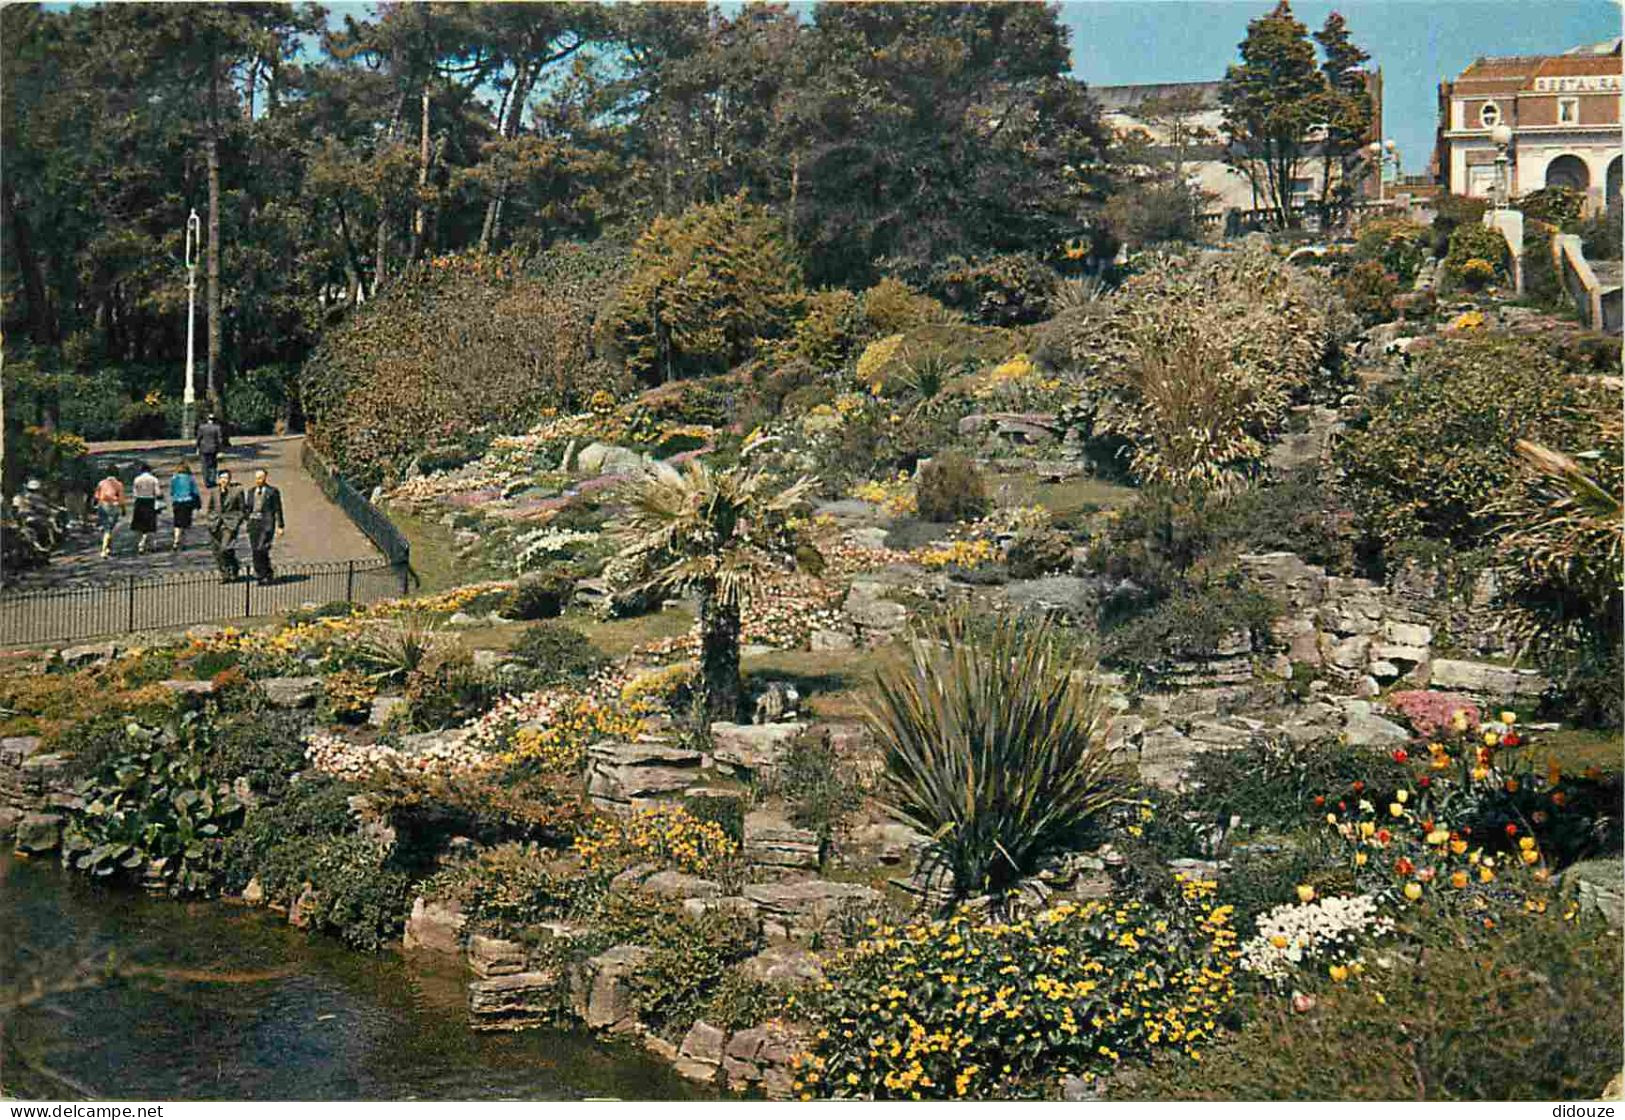 Angleterre - Bournemouth - Lower Gardens - Rock Garden - Jardins - Hampshire - England - Royaume Uni - UK - United Kingd - Bournemouth (avant 1972)